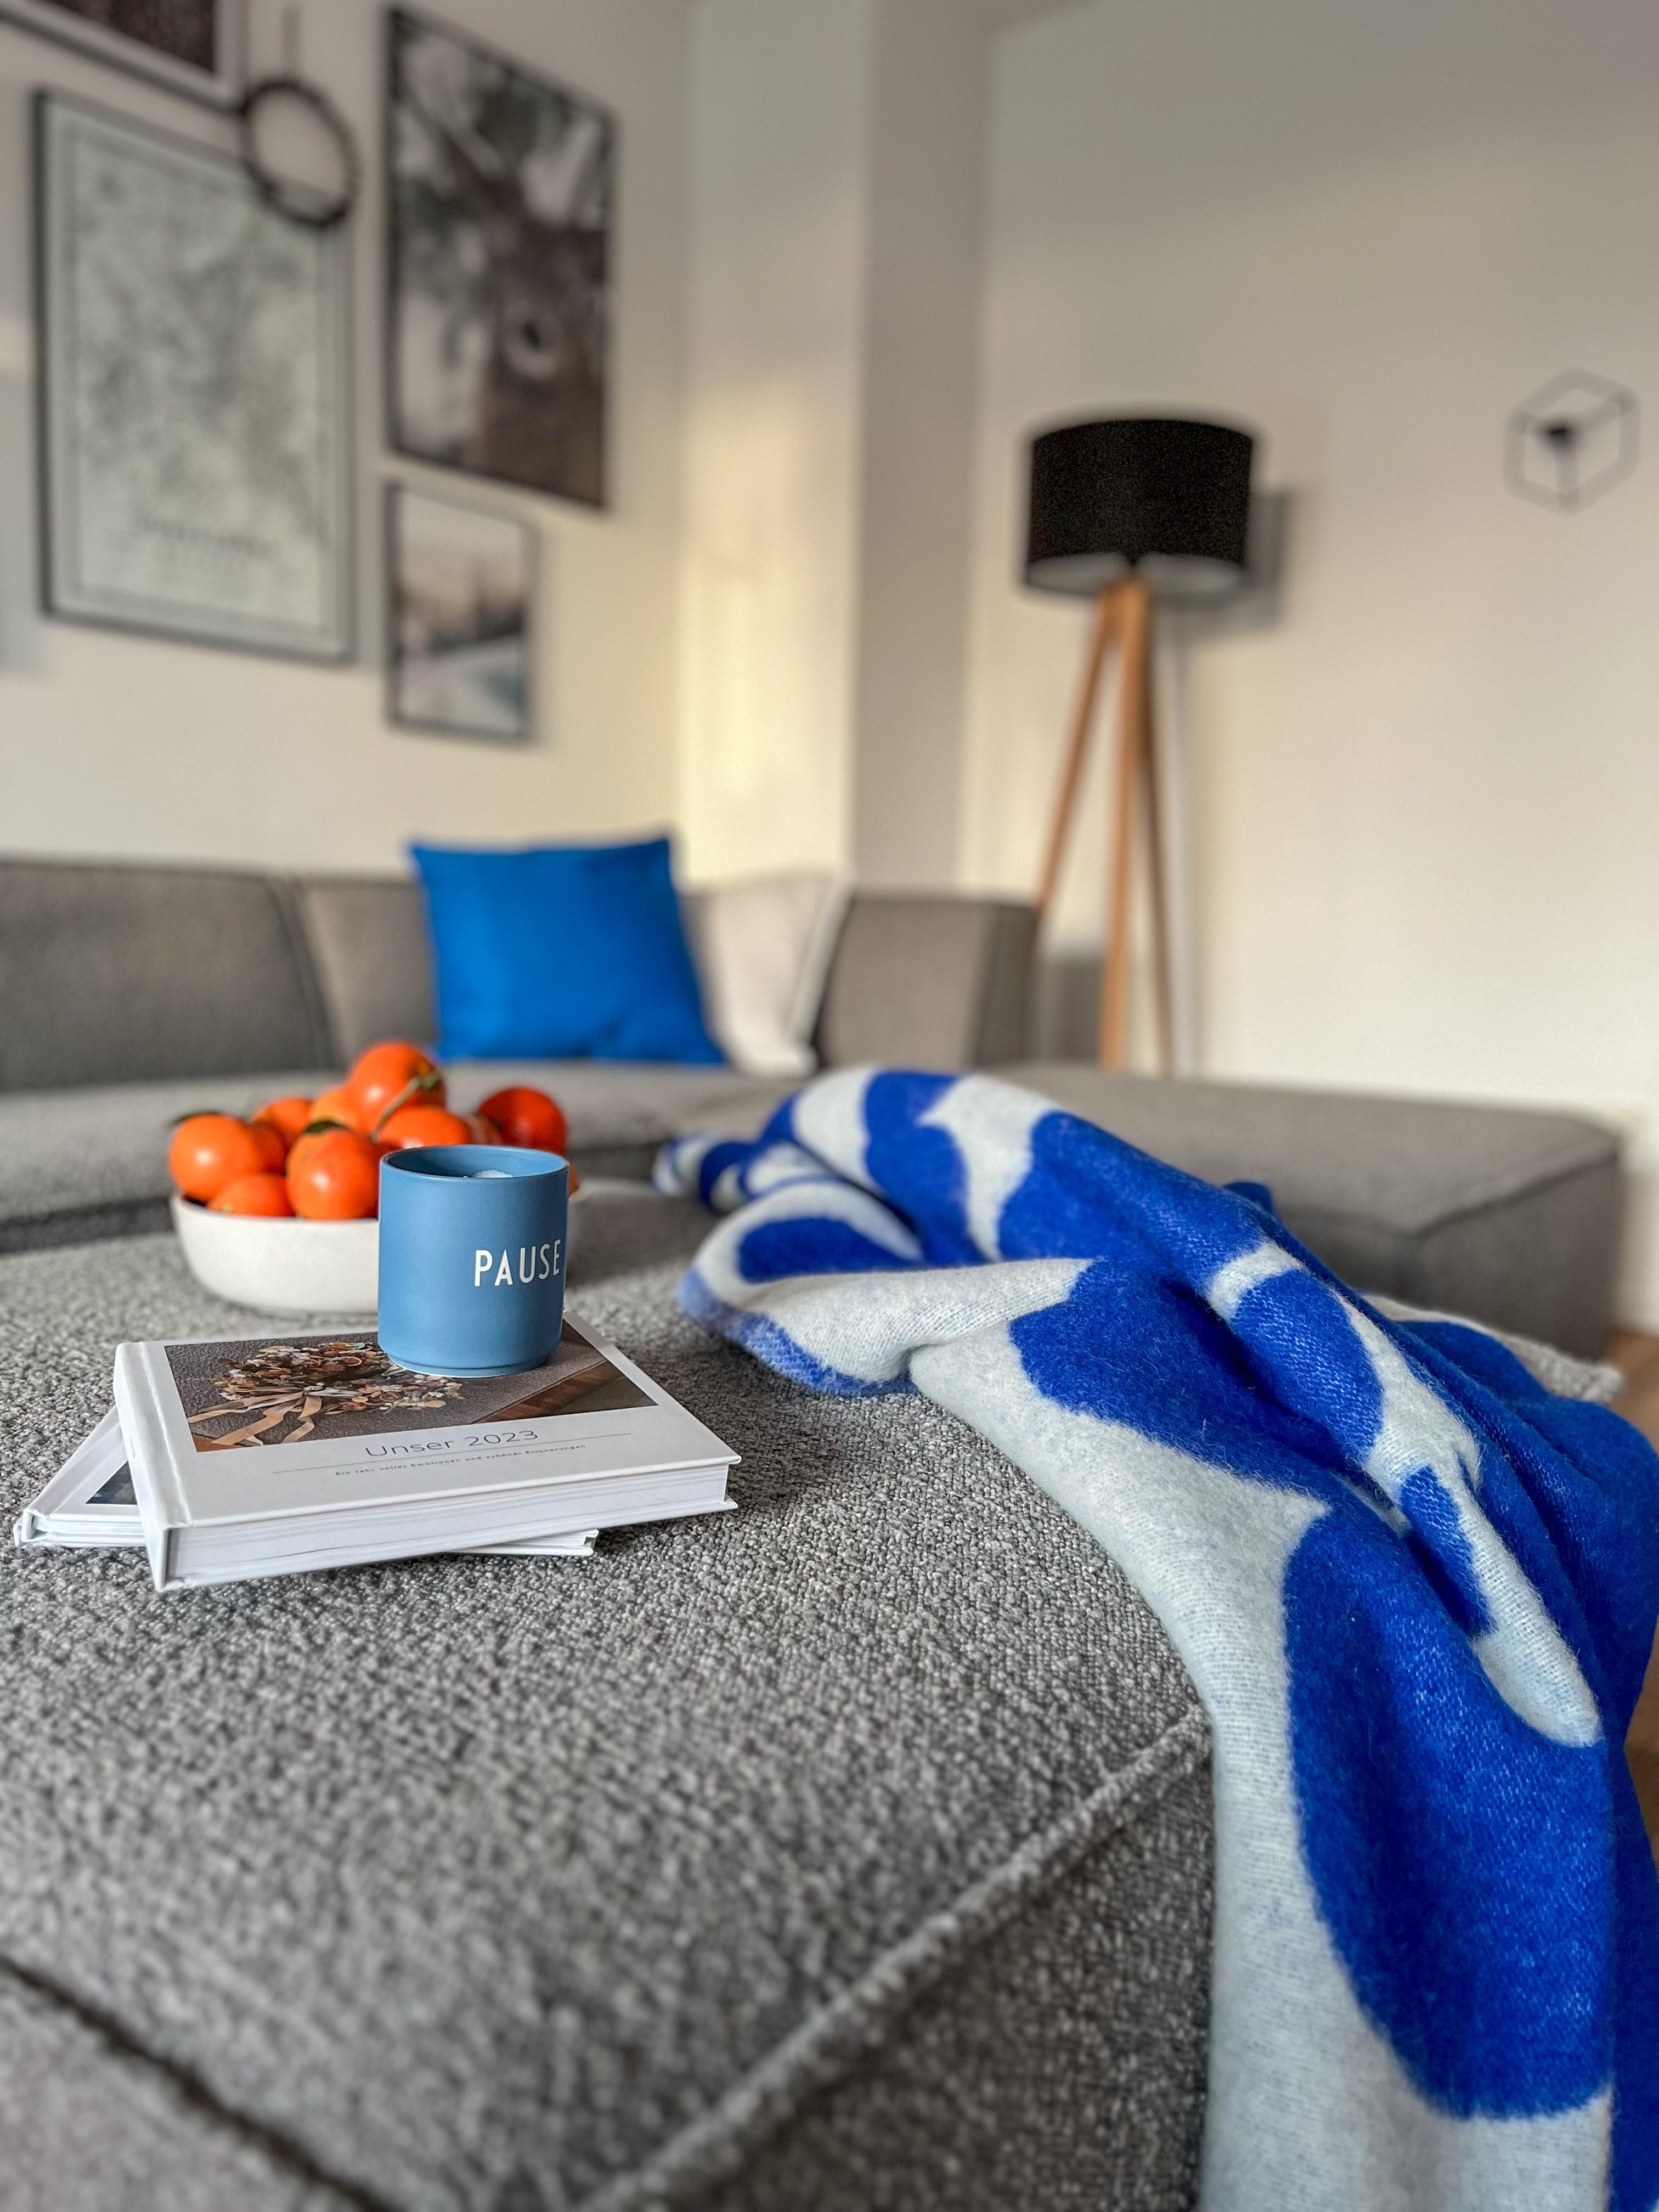 PAUSE 
#wohnzimmer #coffeetablebook #decken #blau #kuscheldecke #gemütlich #homedecor #colourfulhome